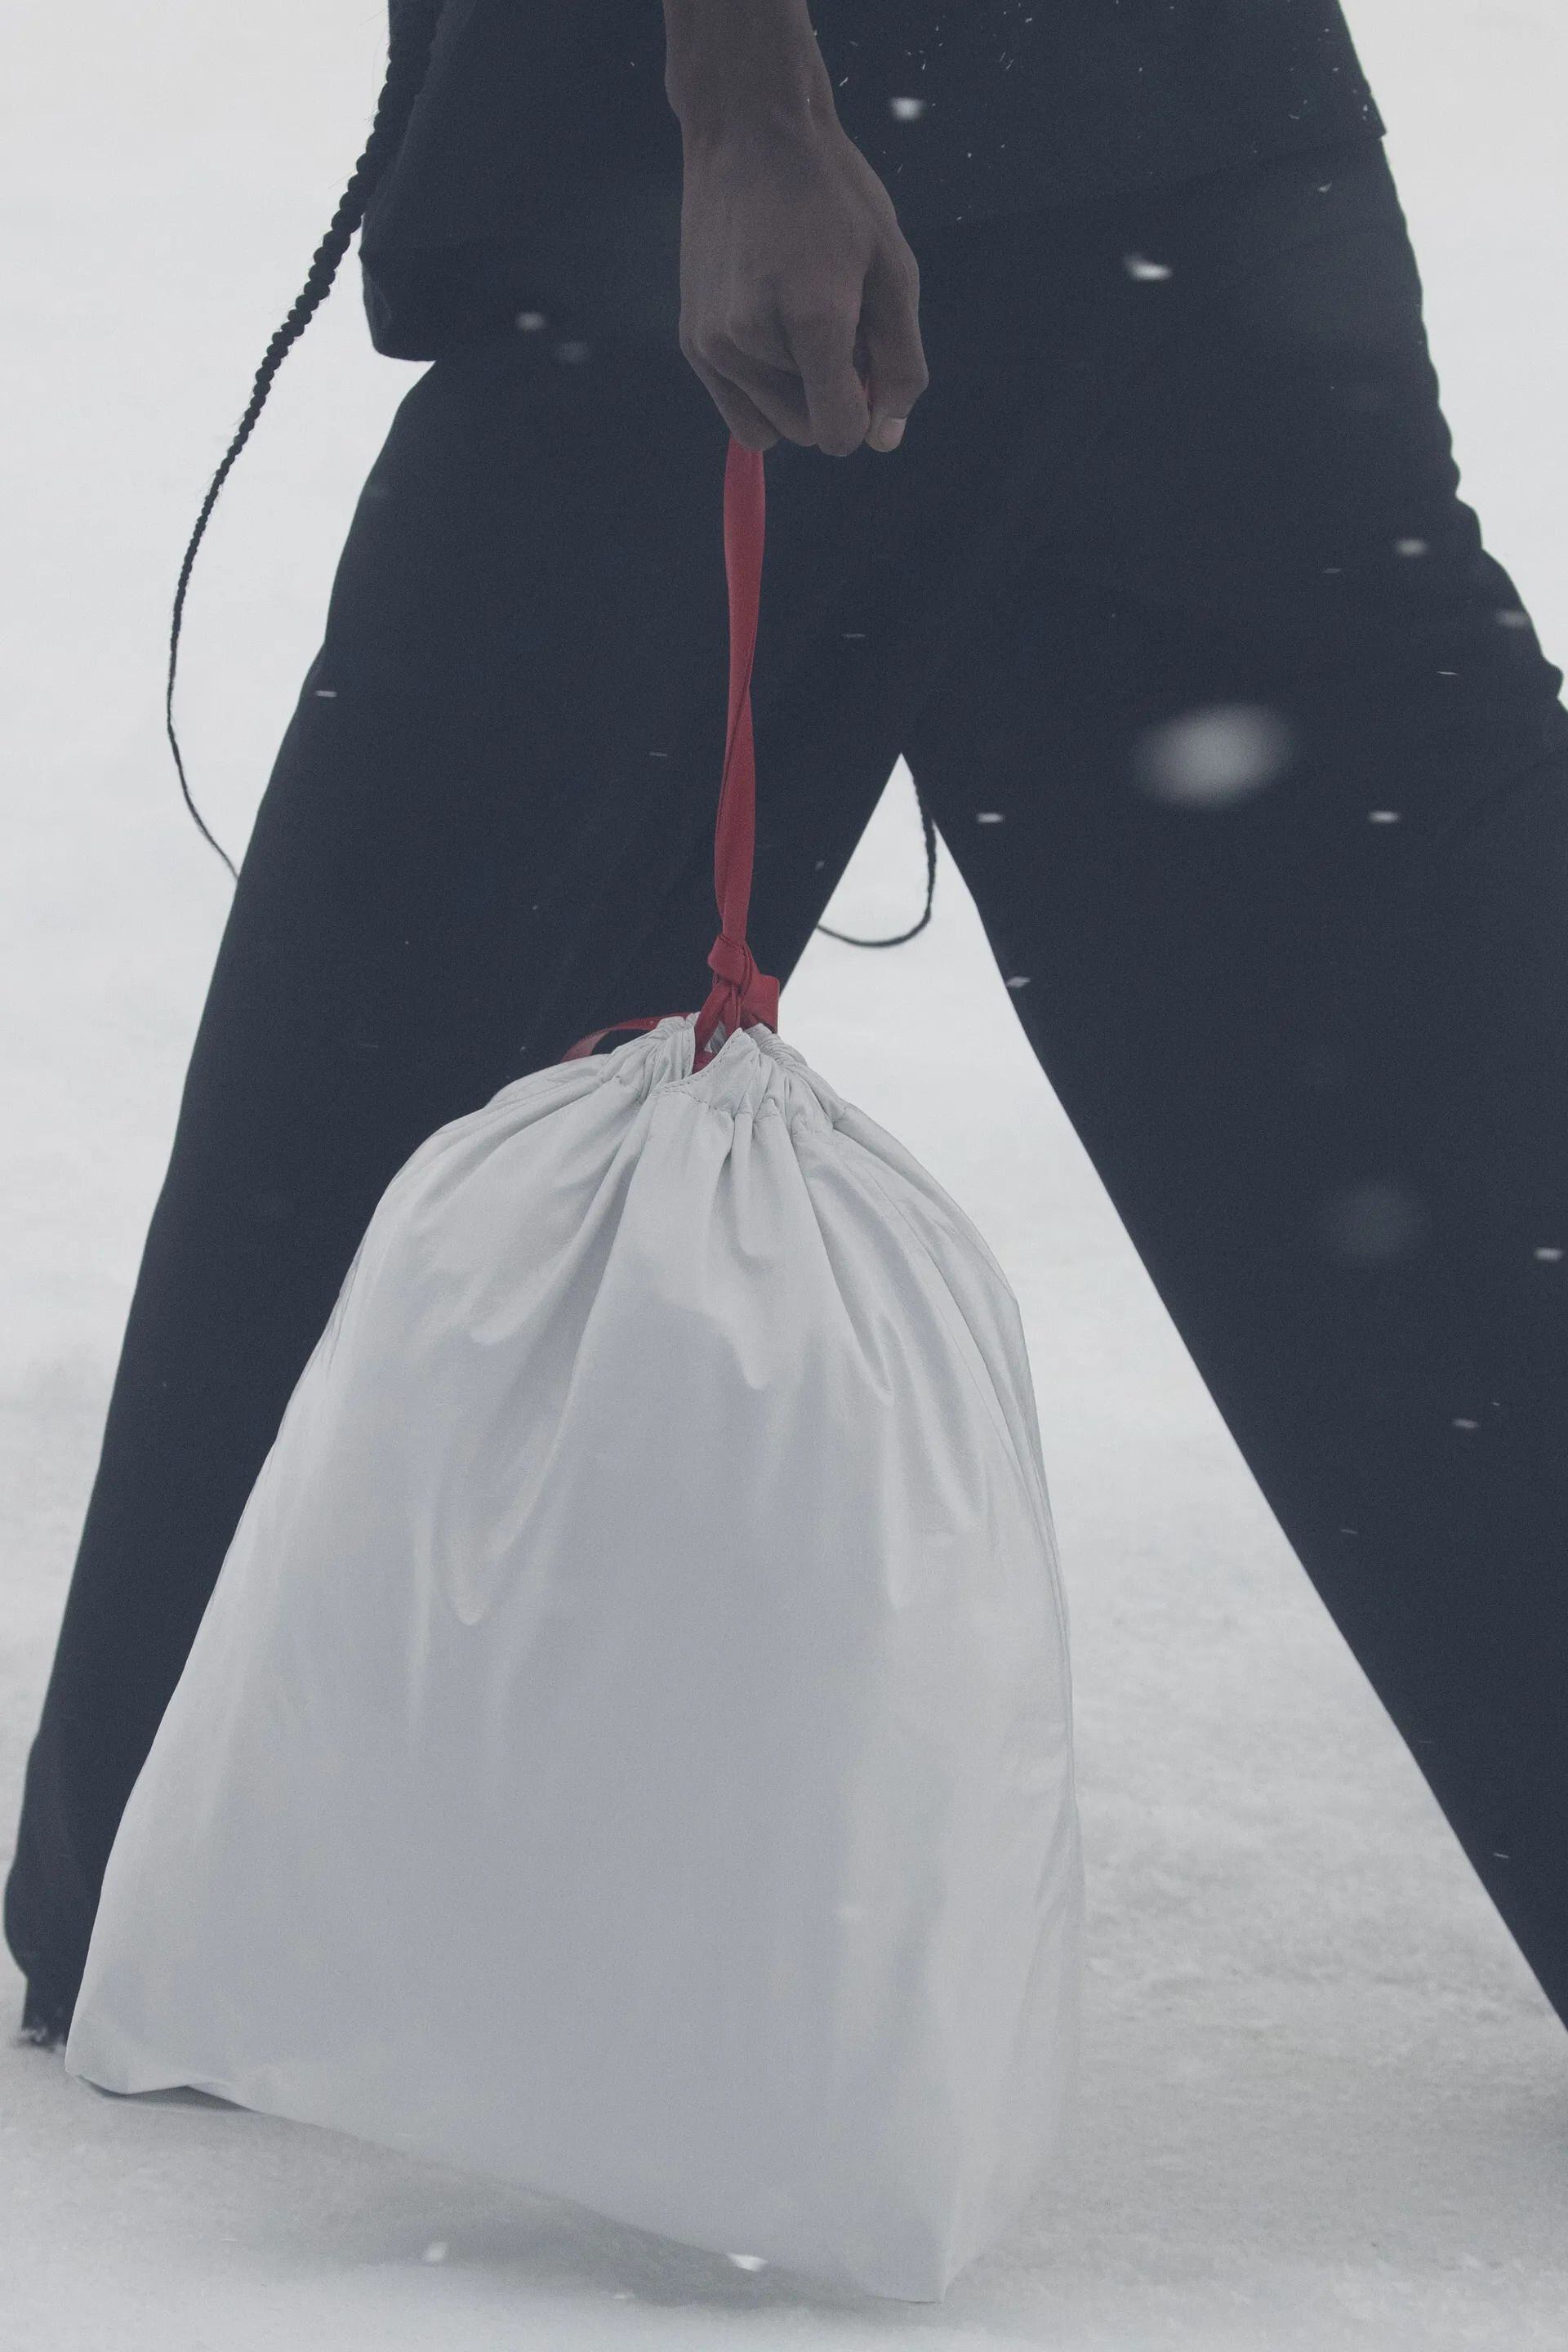 Balenciaga Releases Actual Trash Bags Priced at $1,790 Apiece